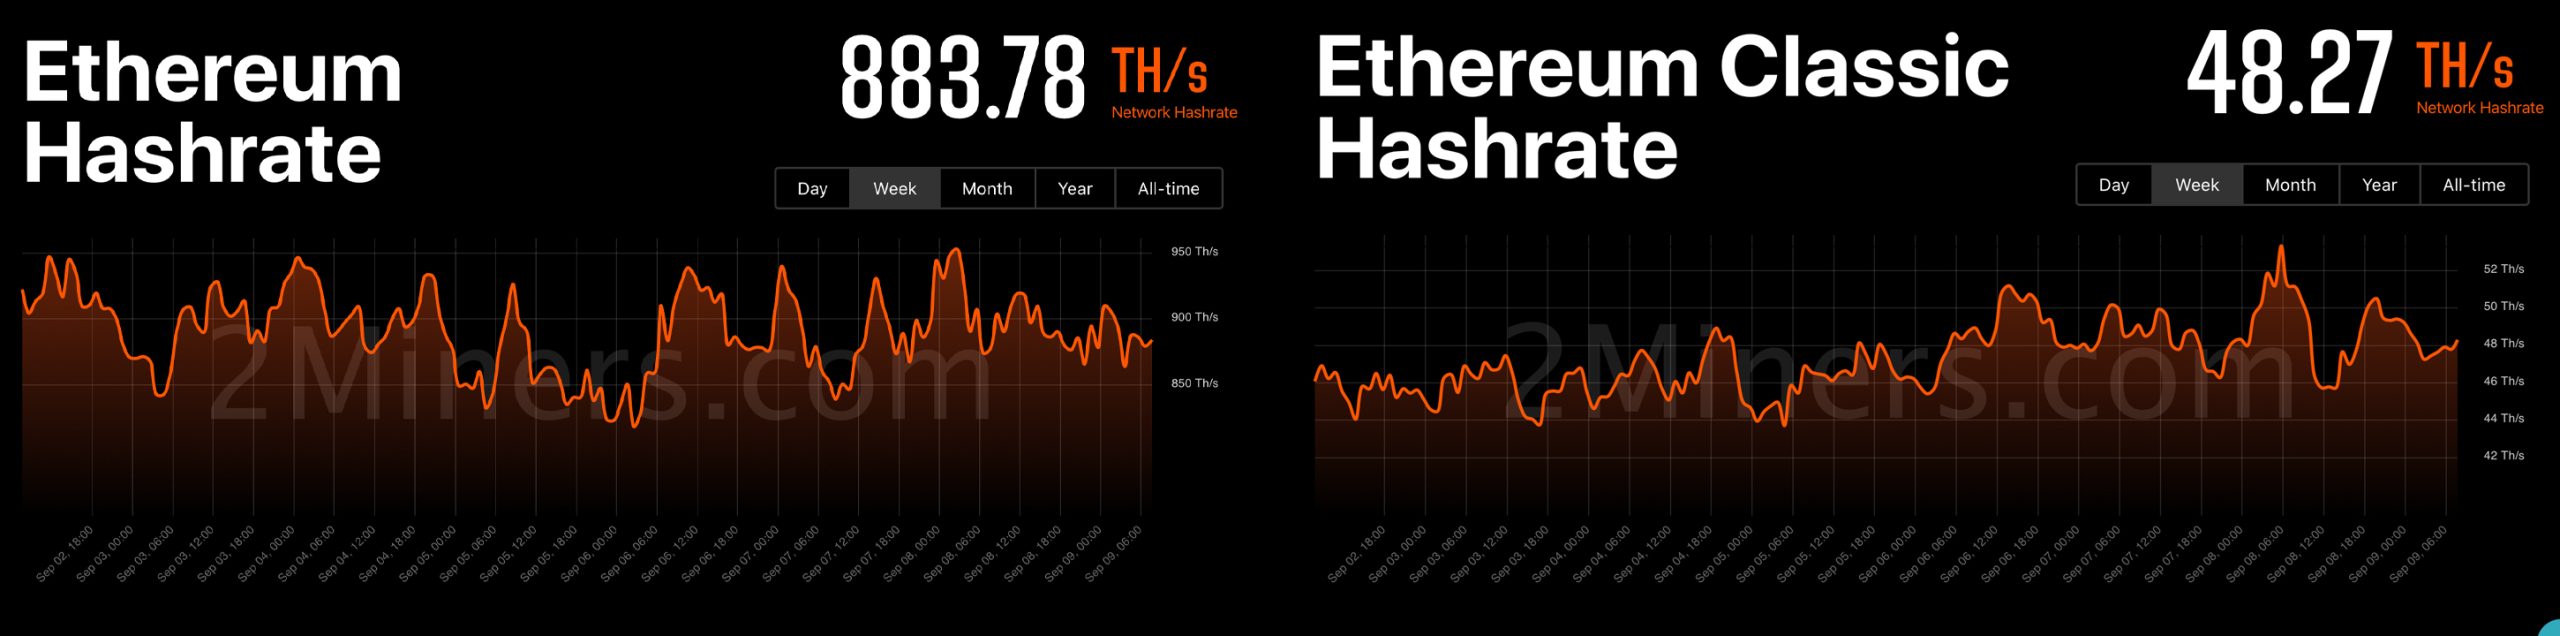 4 tokens criptográficos cosechan poder de hash de la fusión, ETC asegura la mayor parte del hashrate dejando ETH